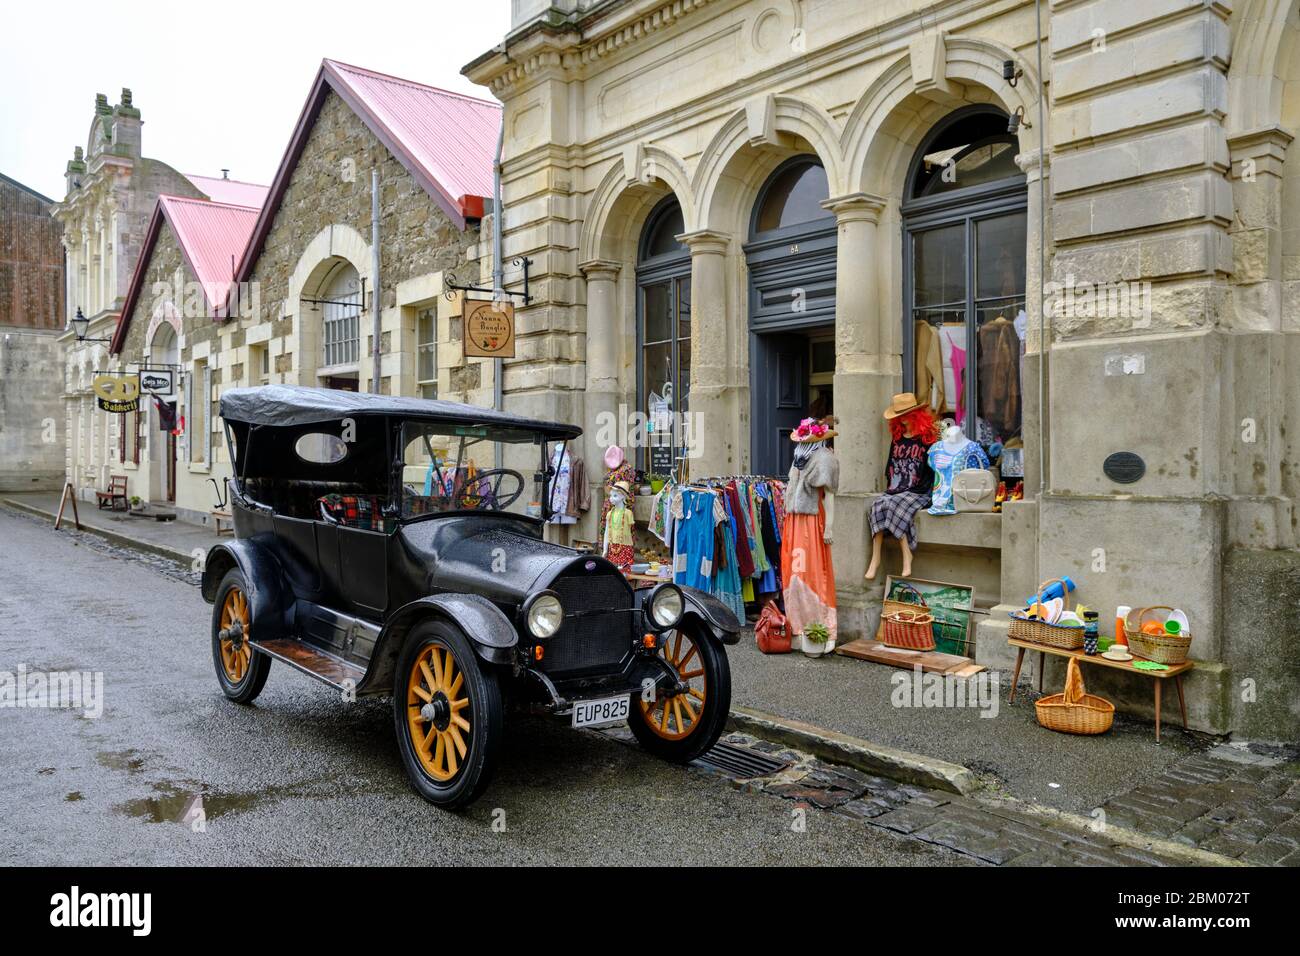 Auto d'epoca parcheggiata accanto ad un edificio classico in Oamaru Harbor Street, considerata la capitale mondiale della piroscafia. Foto Stock